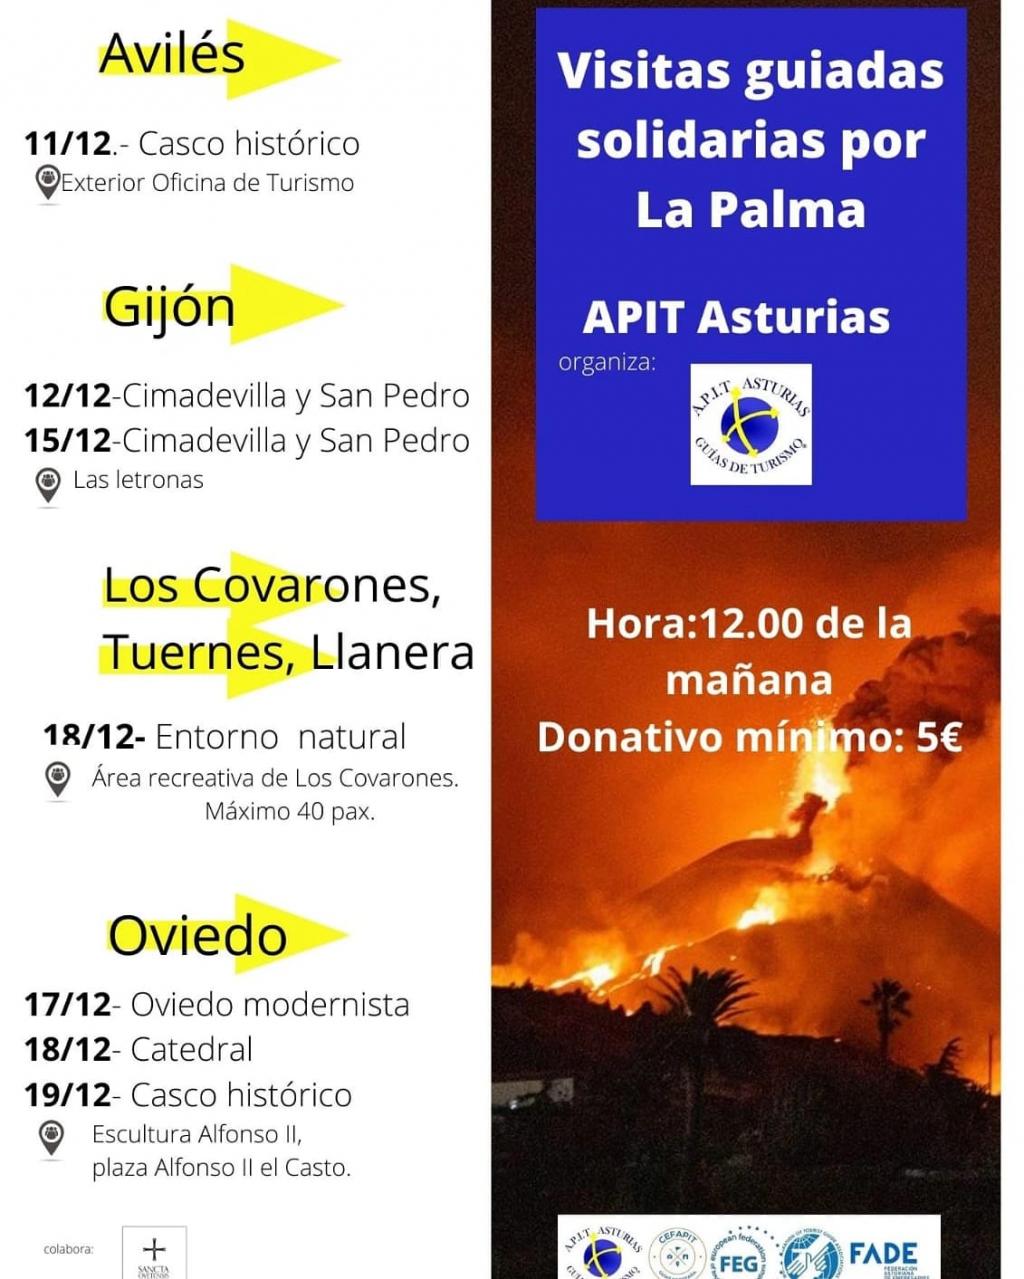 El Tapin - La Asociación Profesional de Informadores Turísticos de Asturias organiza una visita solidaria a Los Covarones a favor de La Palma